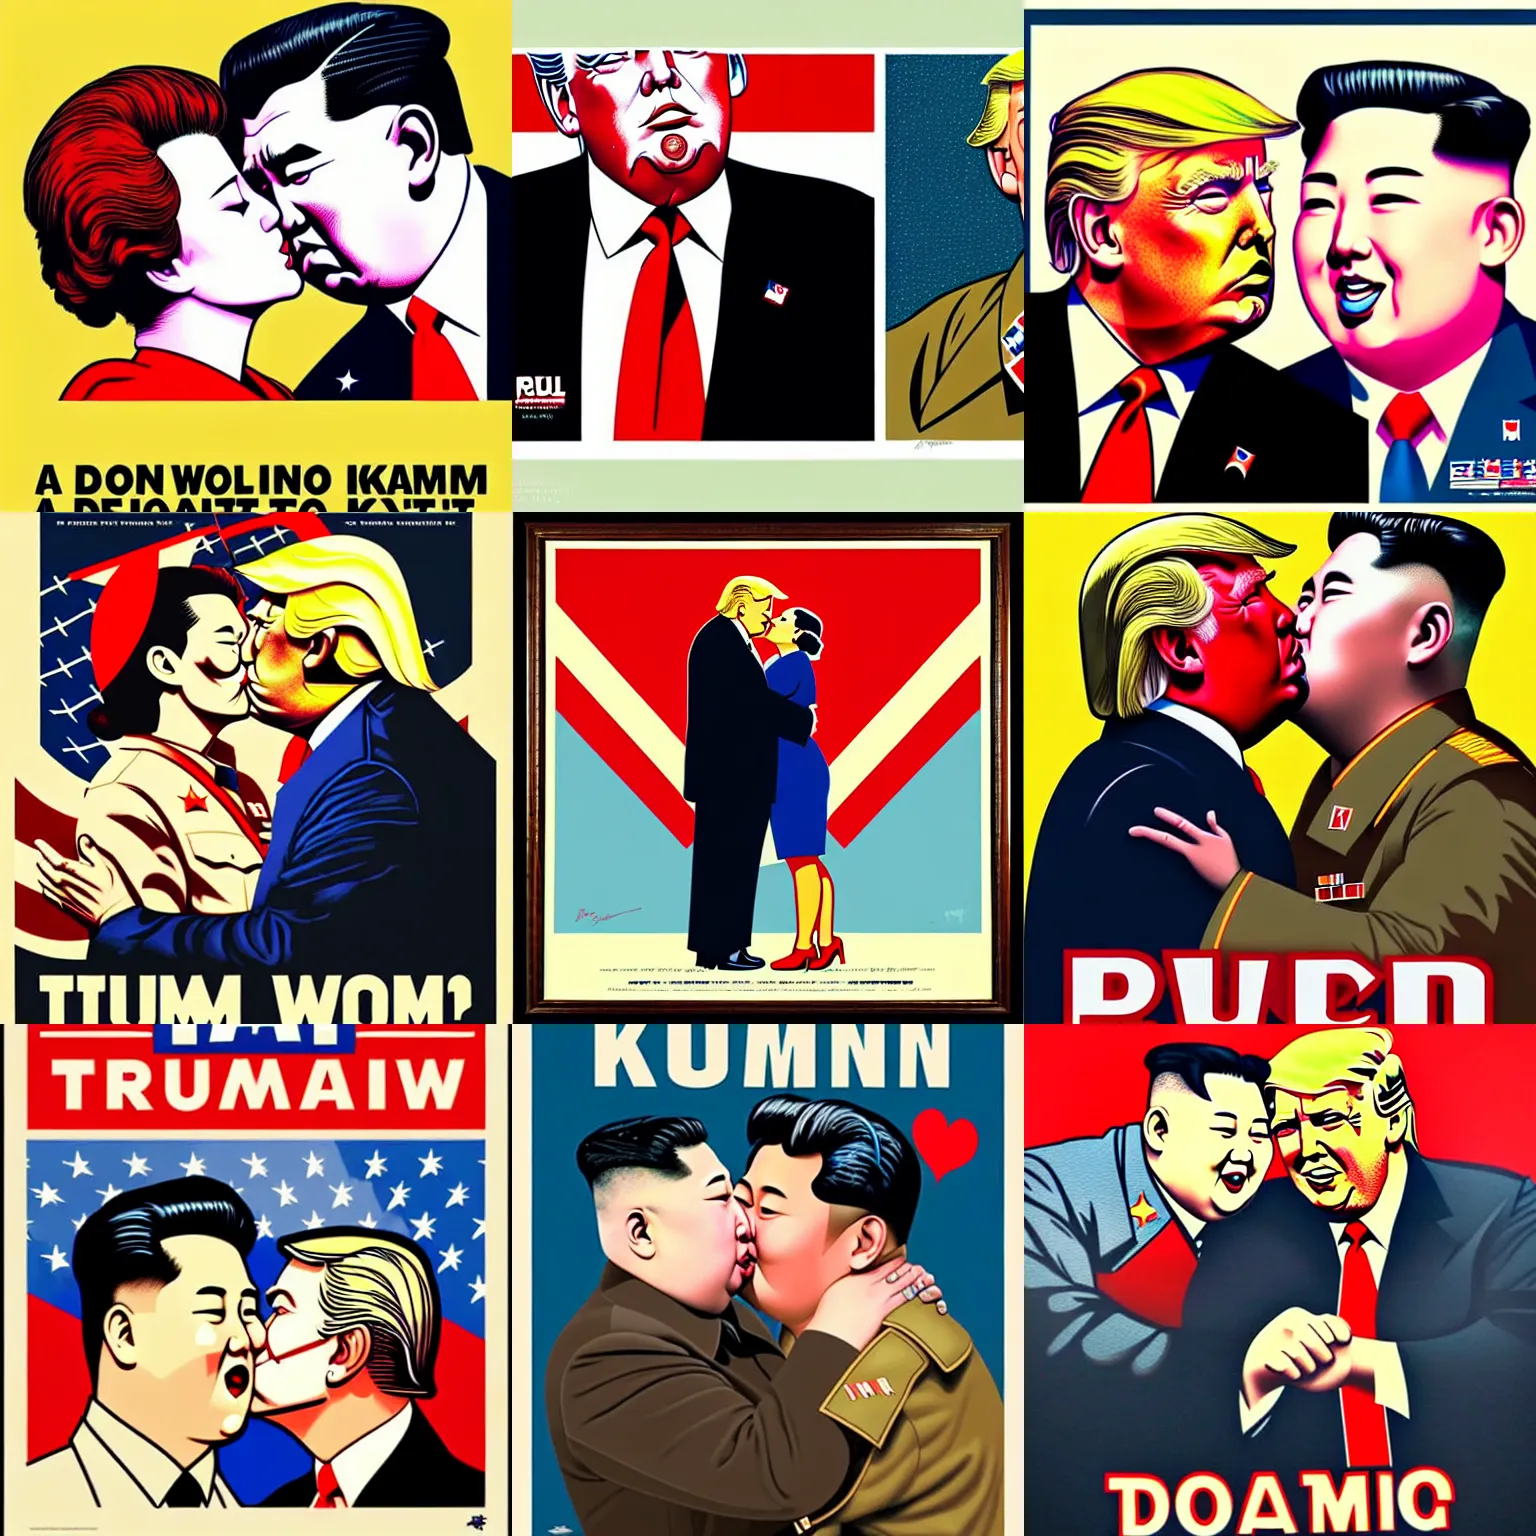 Prompt: a wwii us propaganda portrait of kim jong - un kissing donald trump by rei kamoi and dan mumford